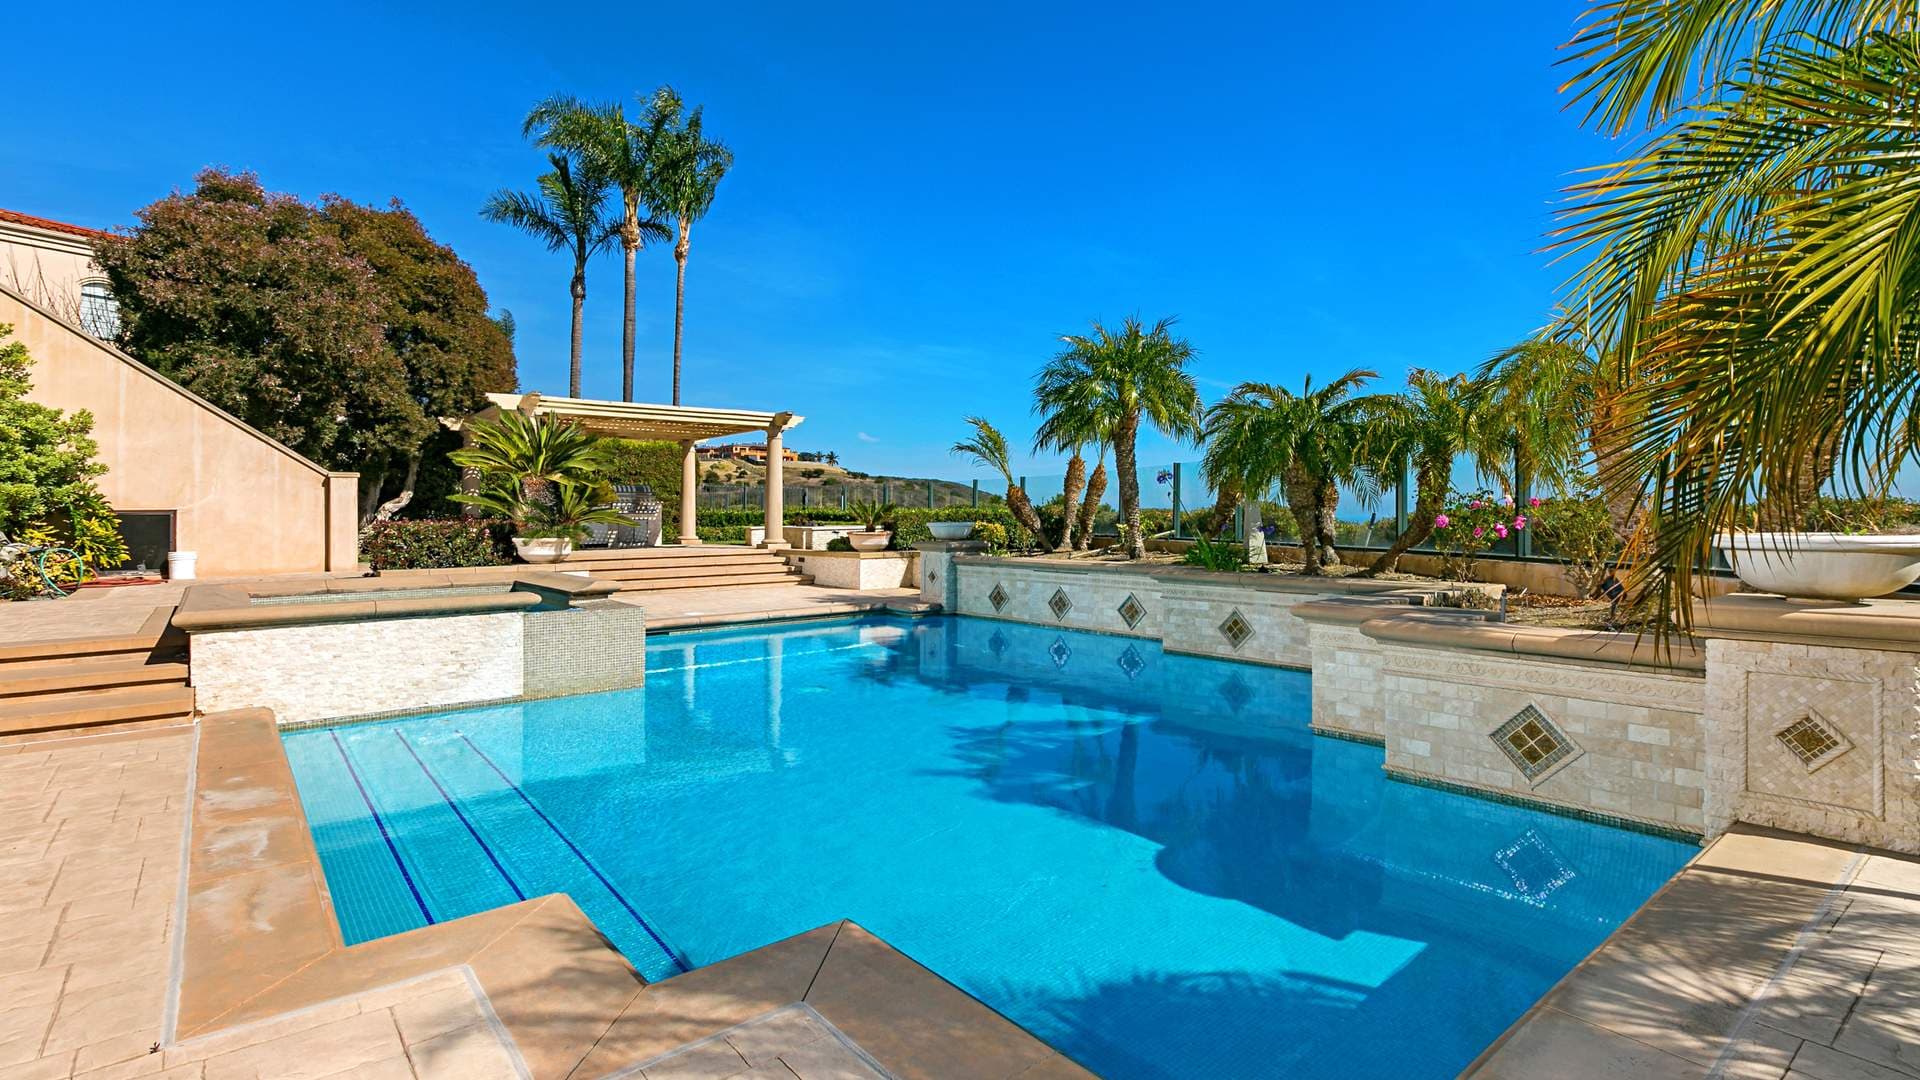 5 Bedroom Villa For Sale Newport Beach Lp01276 1a6a6dd512a1ae00.jpg